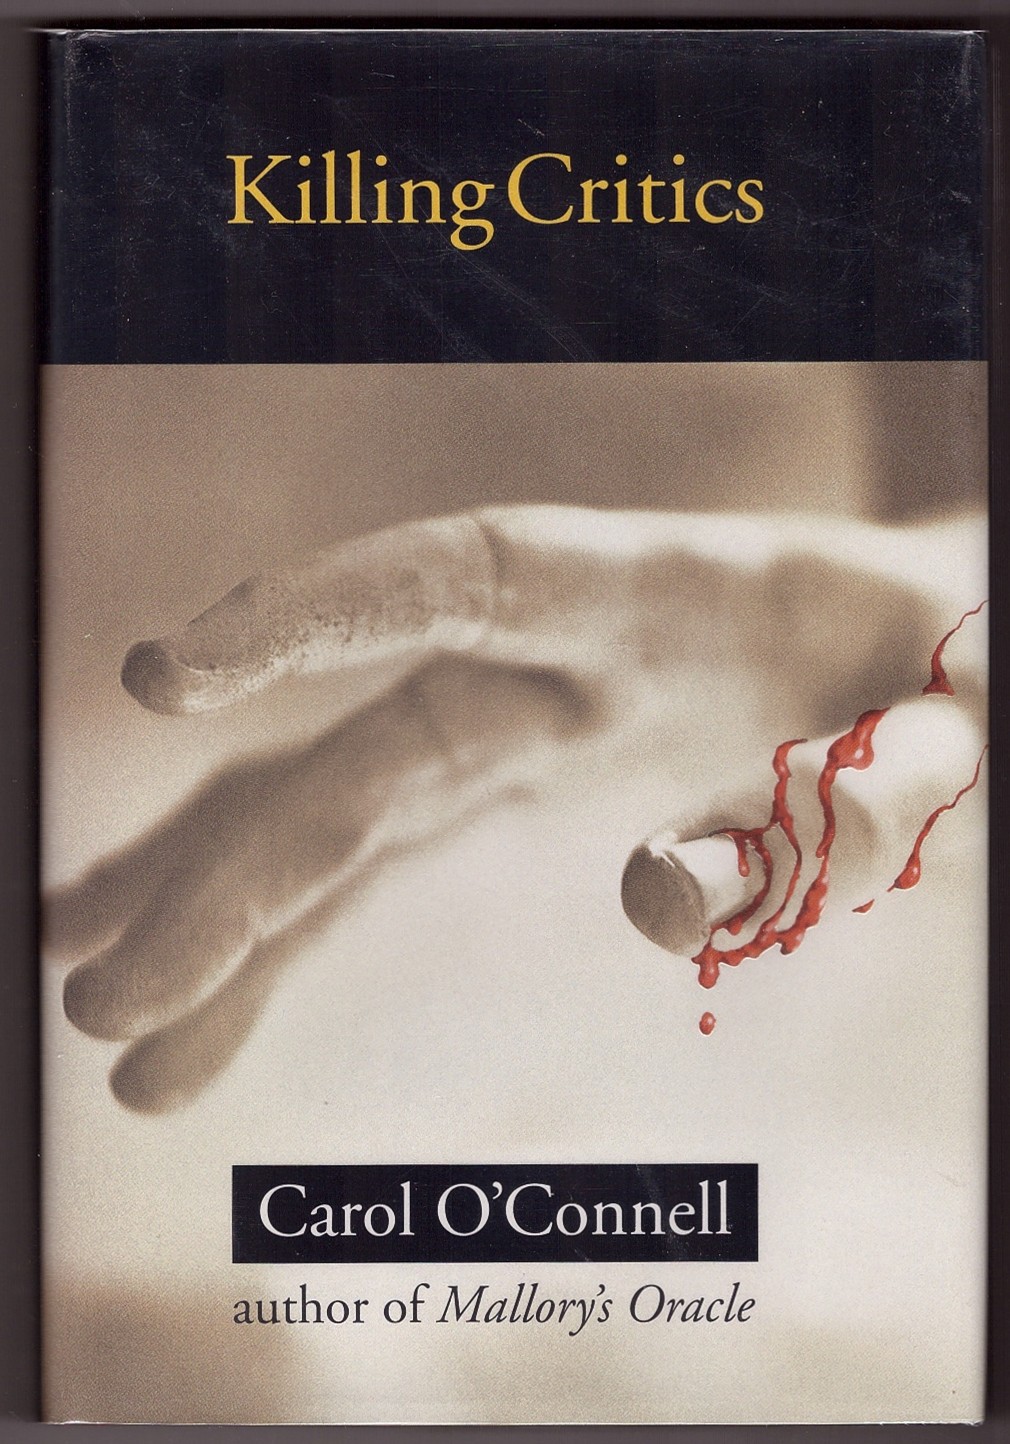 O'CONNELL, CAROL - Killing Critics